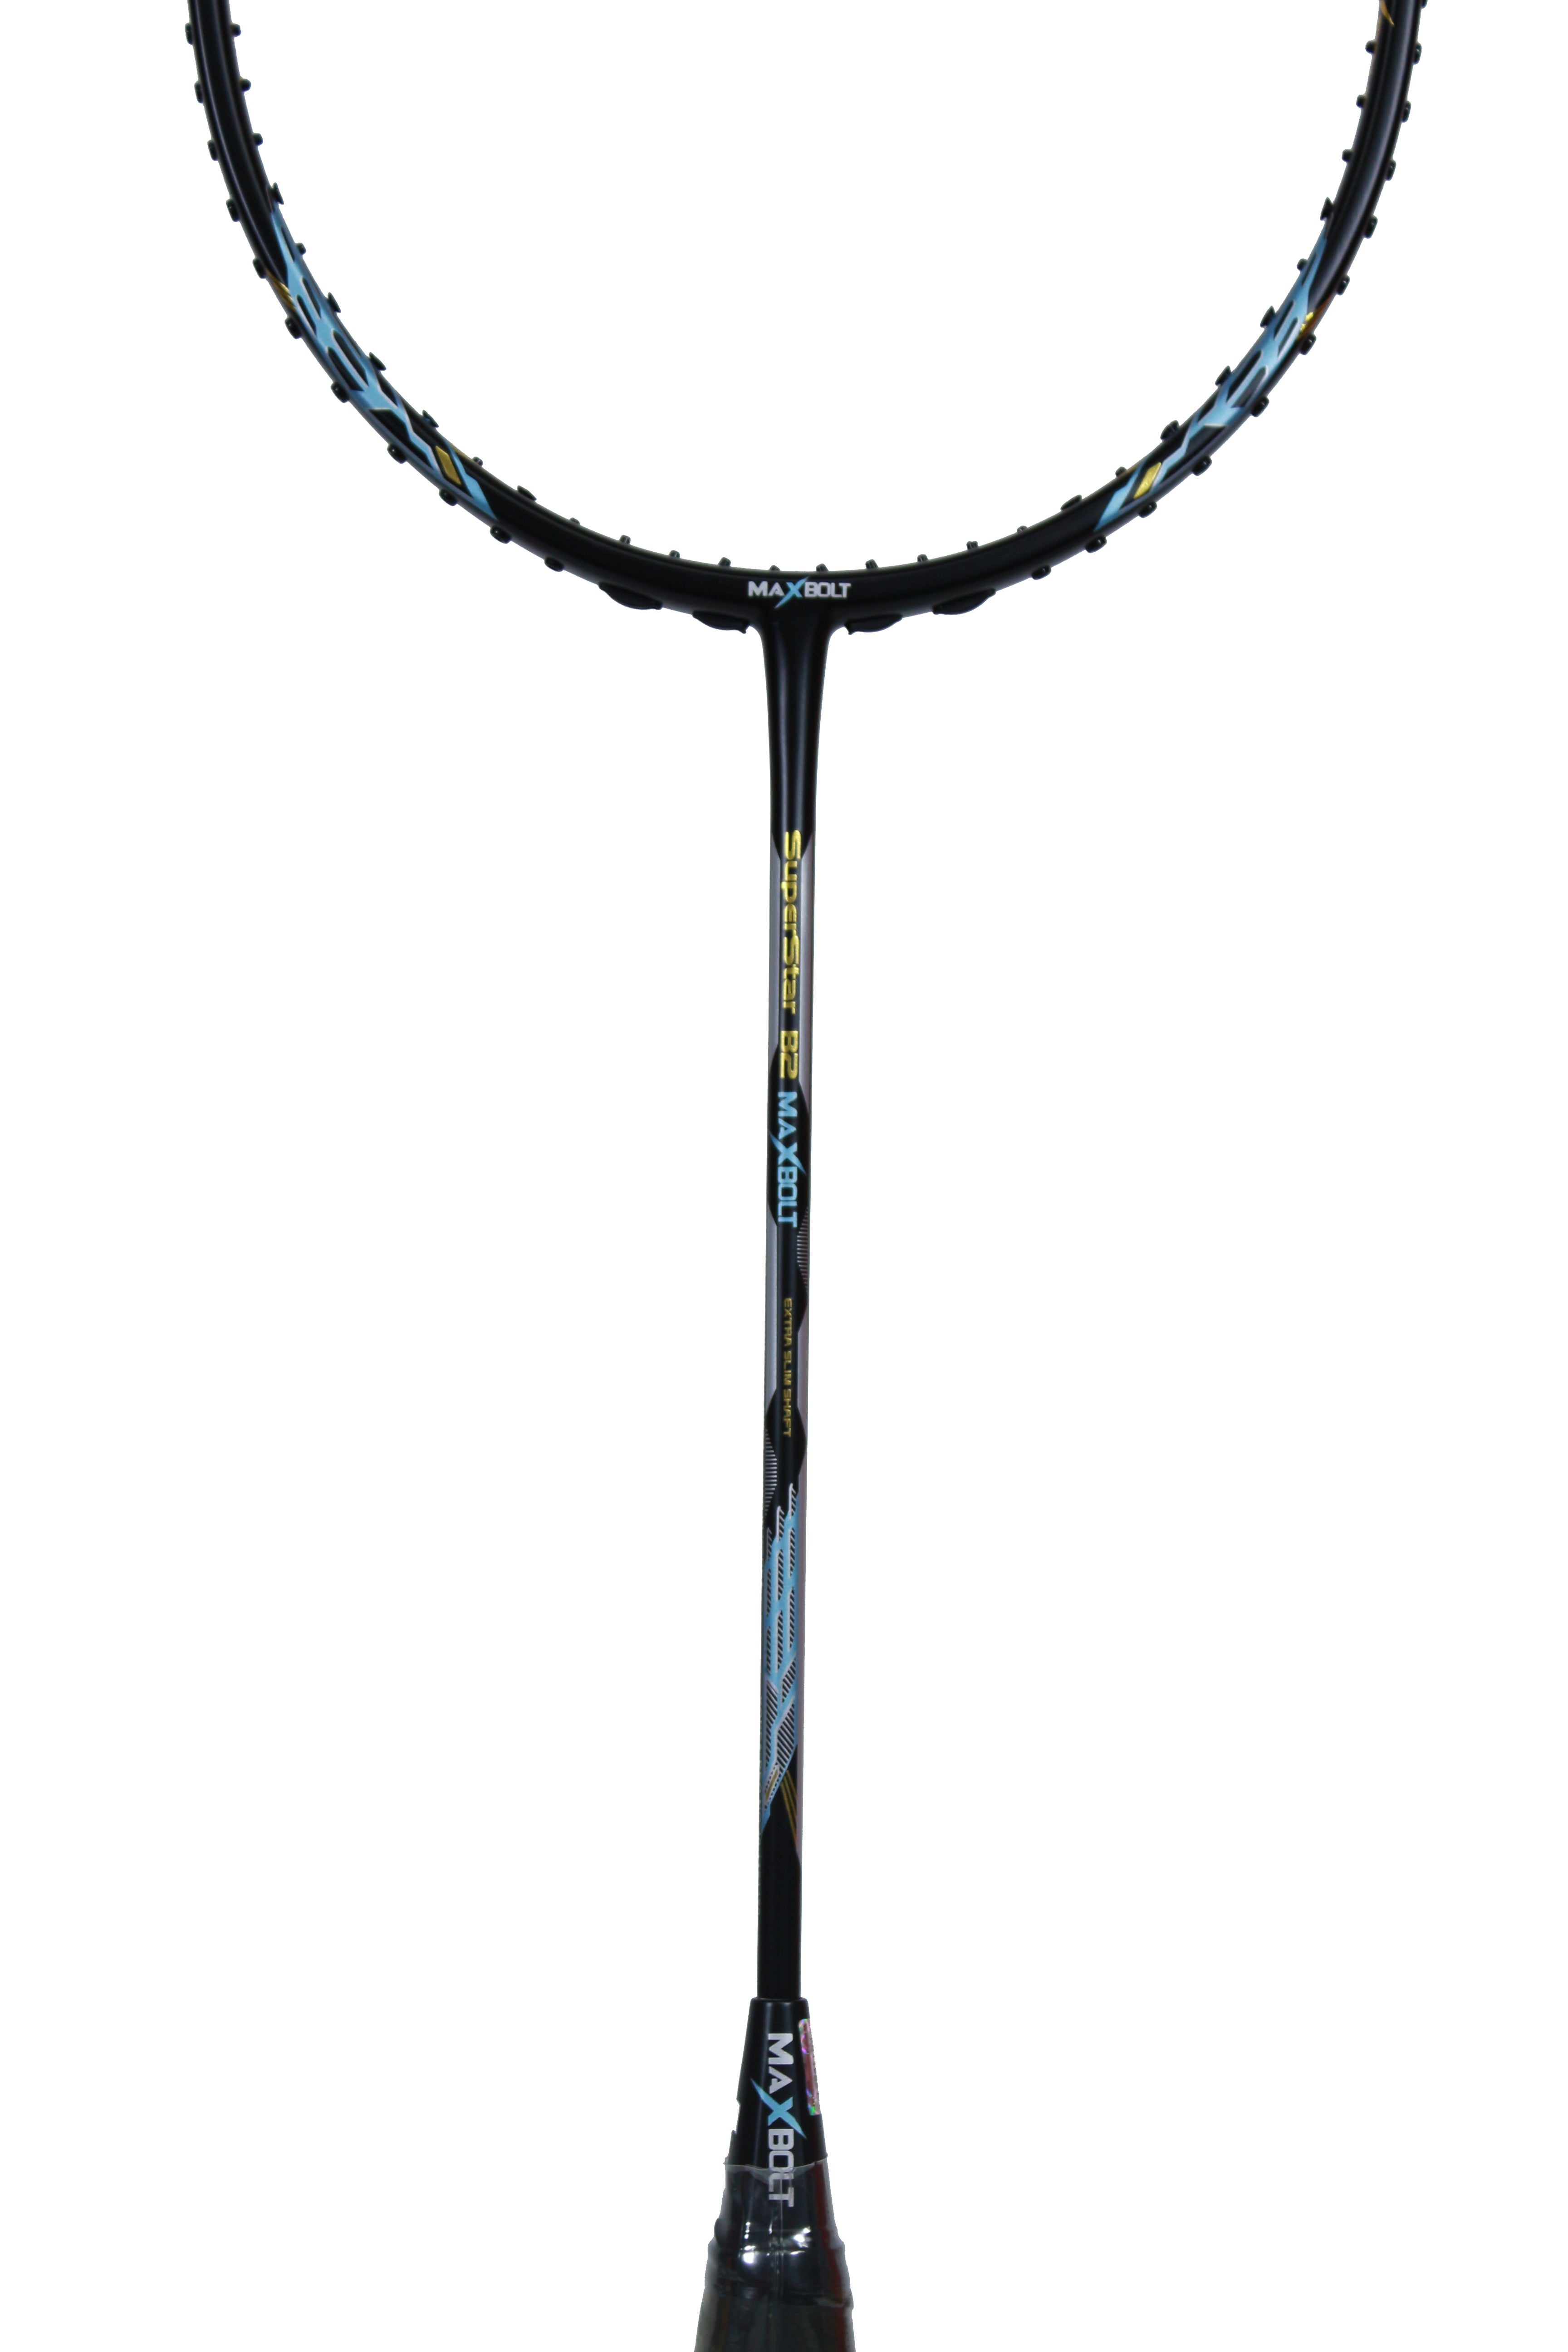 Maxbolt SuperStar B2 Badminton Racket